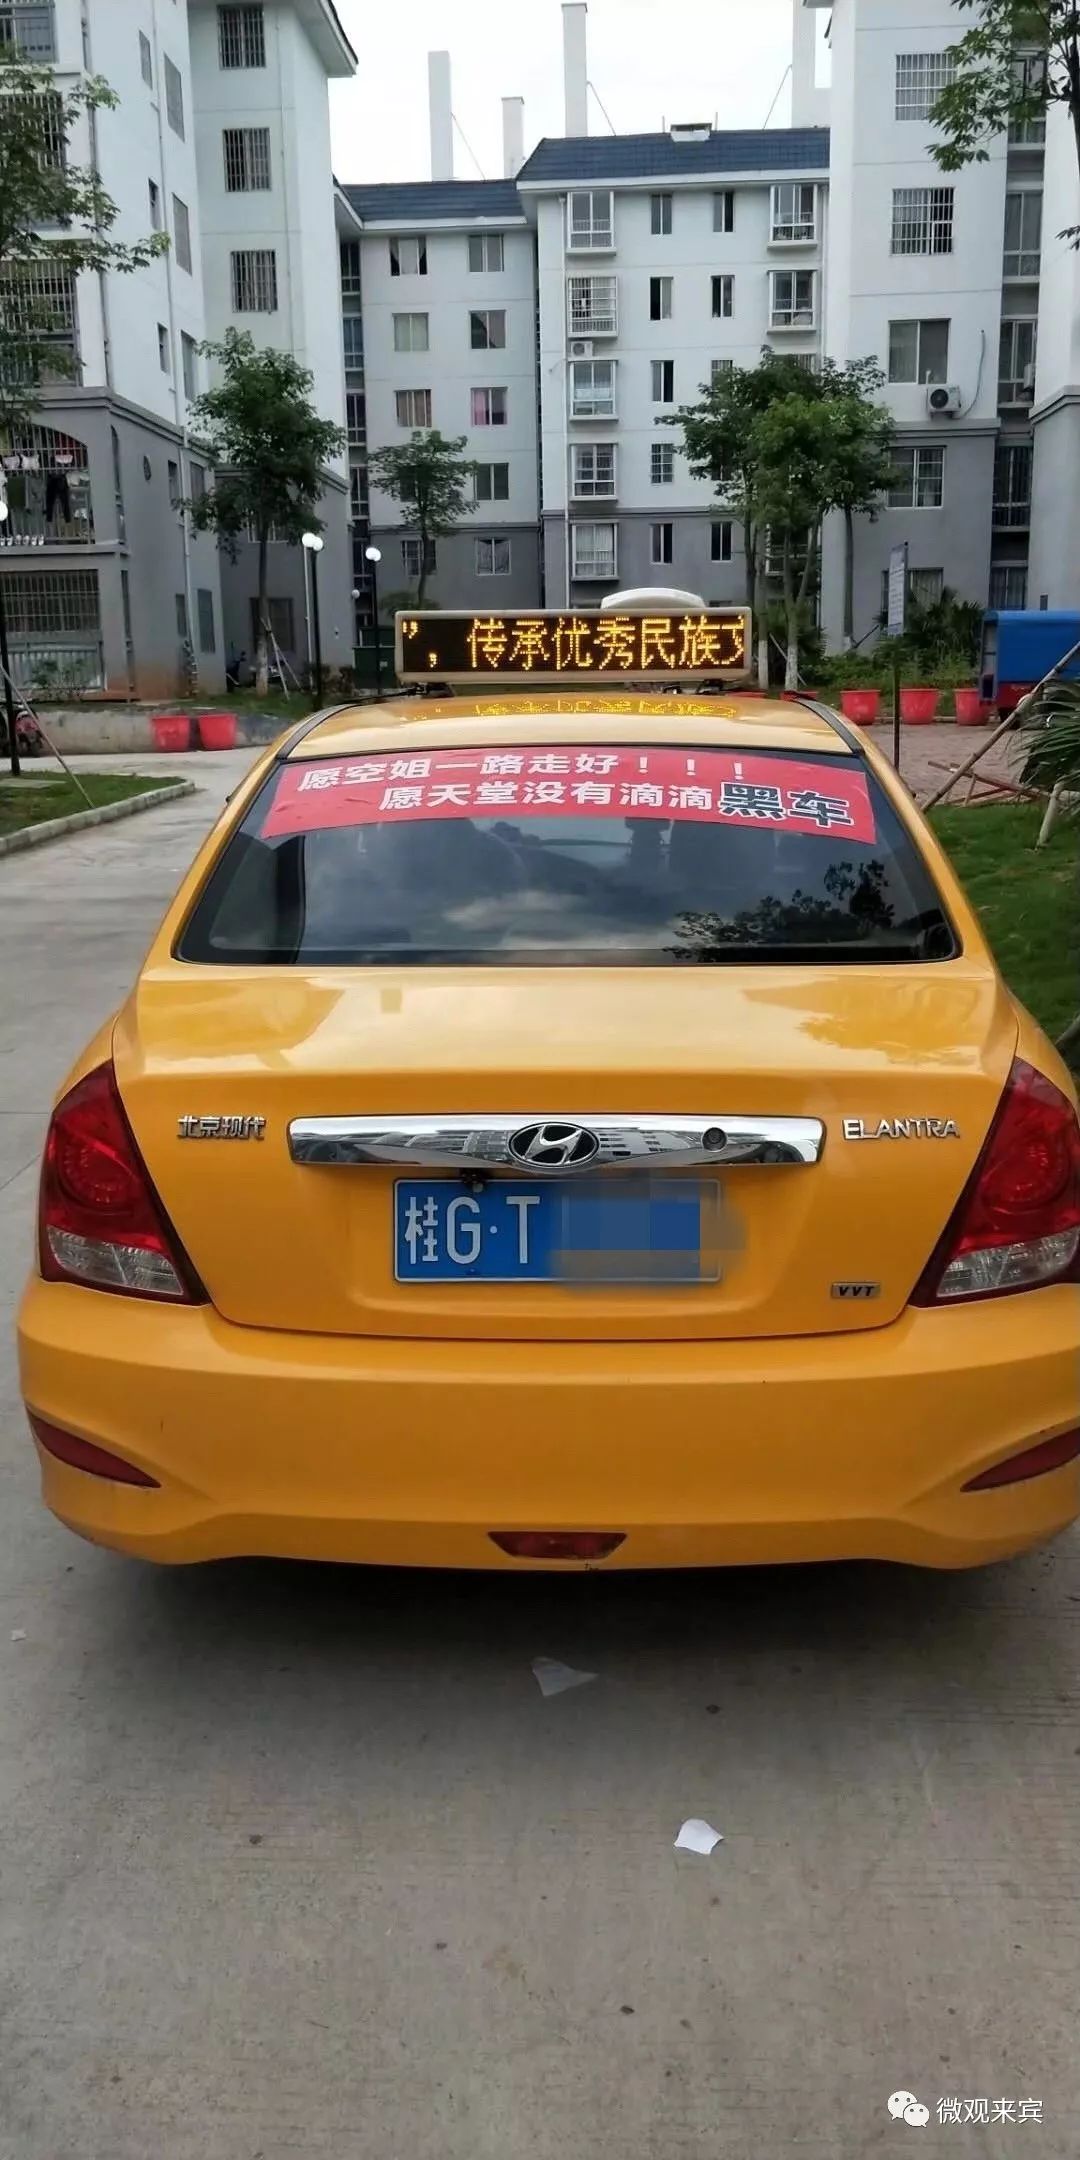 来宾出租车借"空姐事件"蹭热点,5家出租车公司被约谈